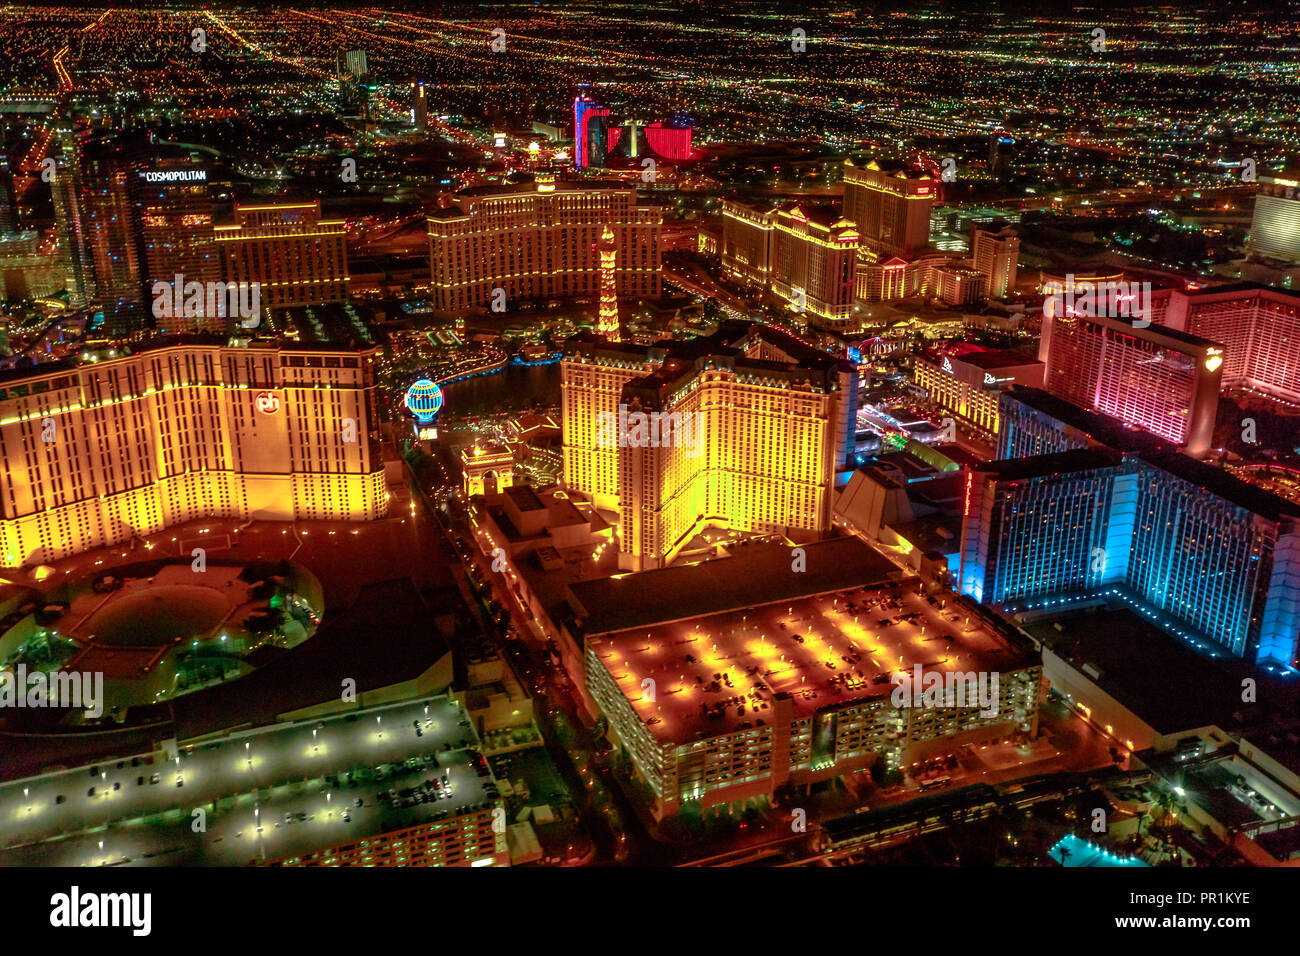 Las Vegas, Nevada, Stati Uniti - Agosto 18, 2018: veduta aerea della Strip di Las Vegas Skyline illuminata di notte. Volo panoramico sopra: cosmopolita, il Paris Las Vegas e Bellagio casinò e hotel. Foto Stock